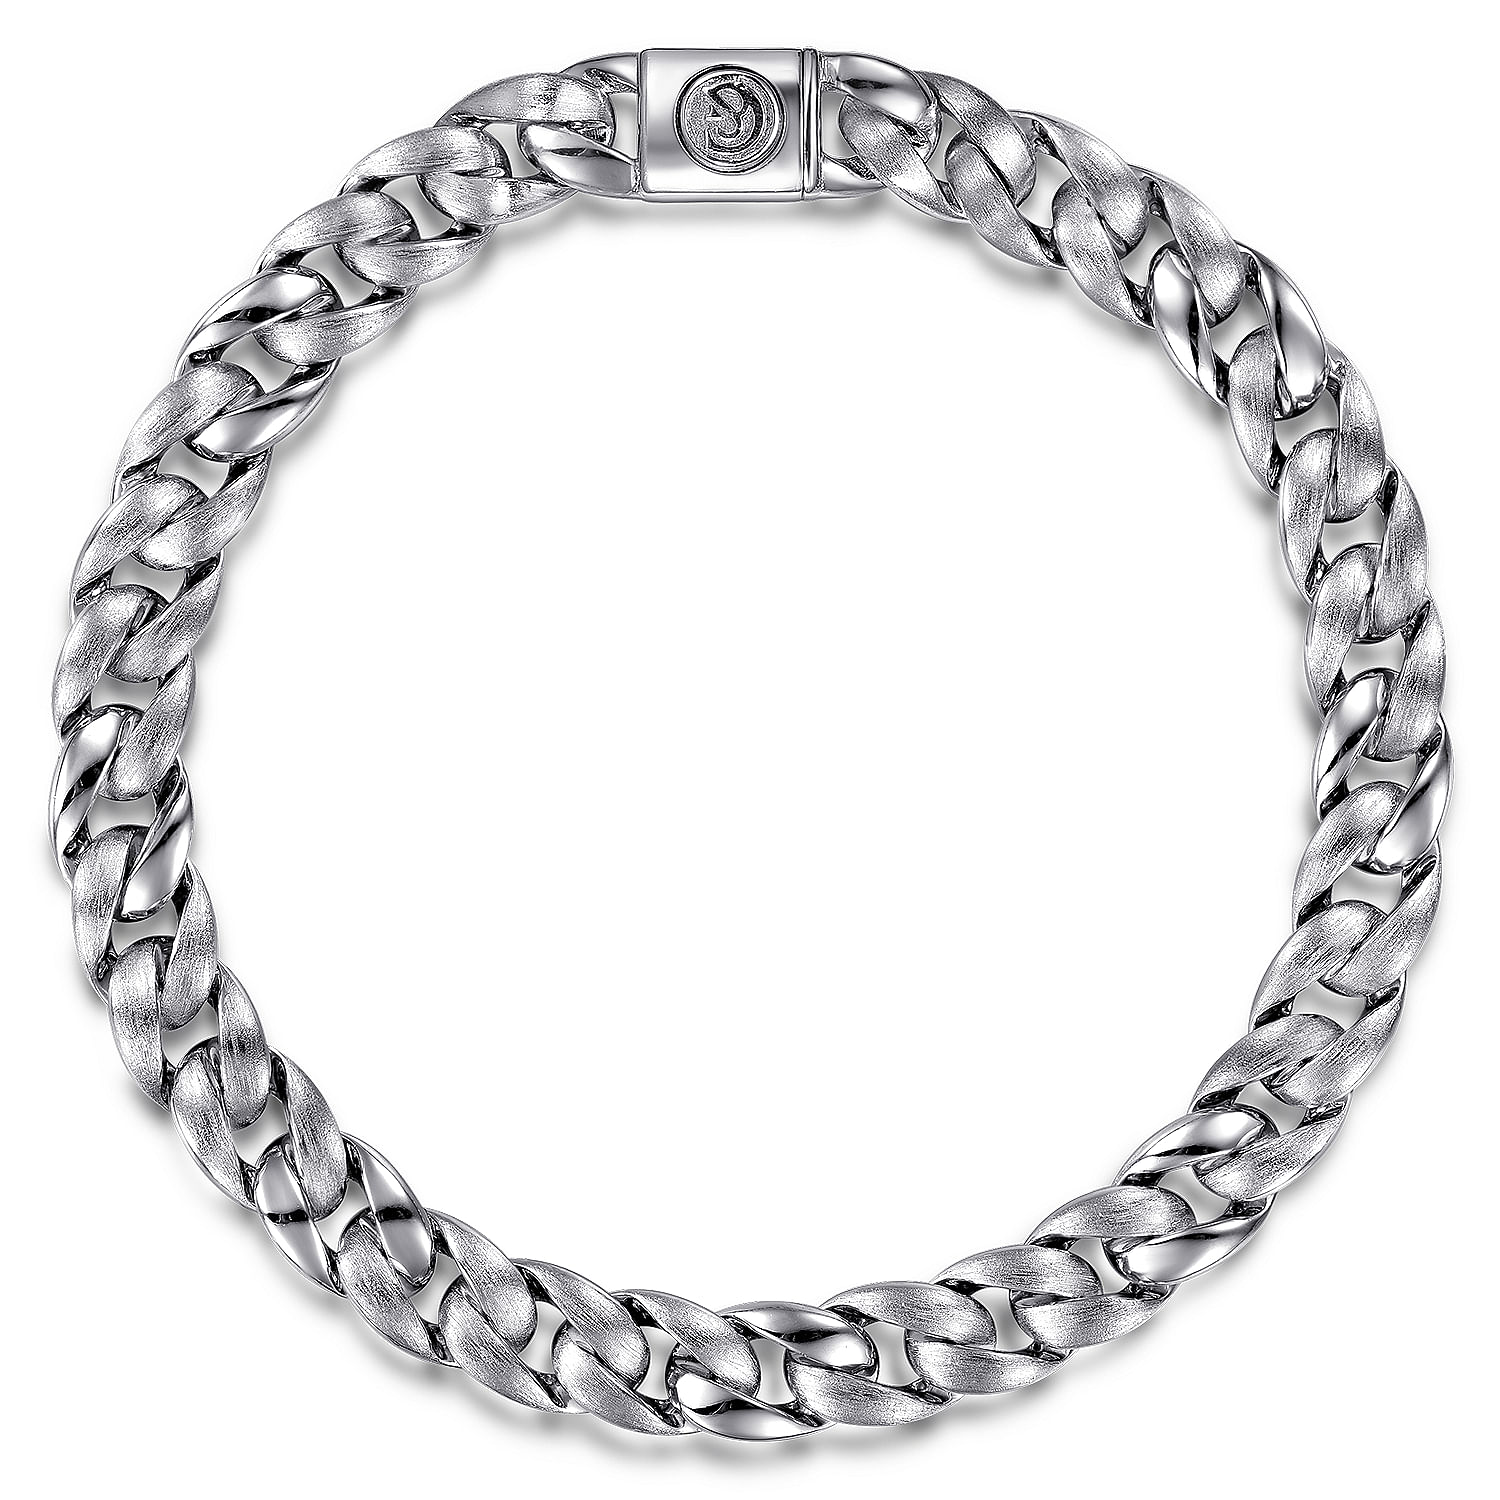 925 Sterling Silver Cuban Link Chain Bracelet